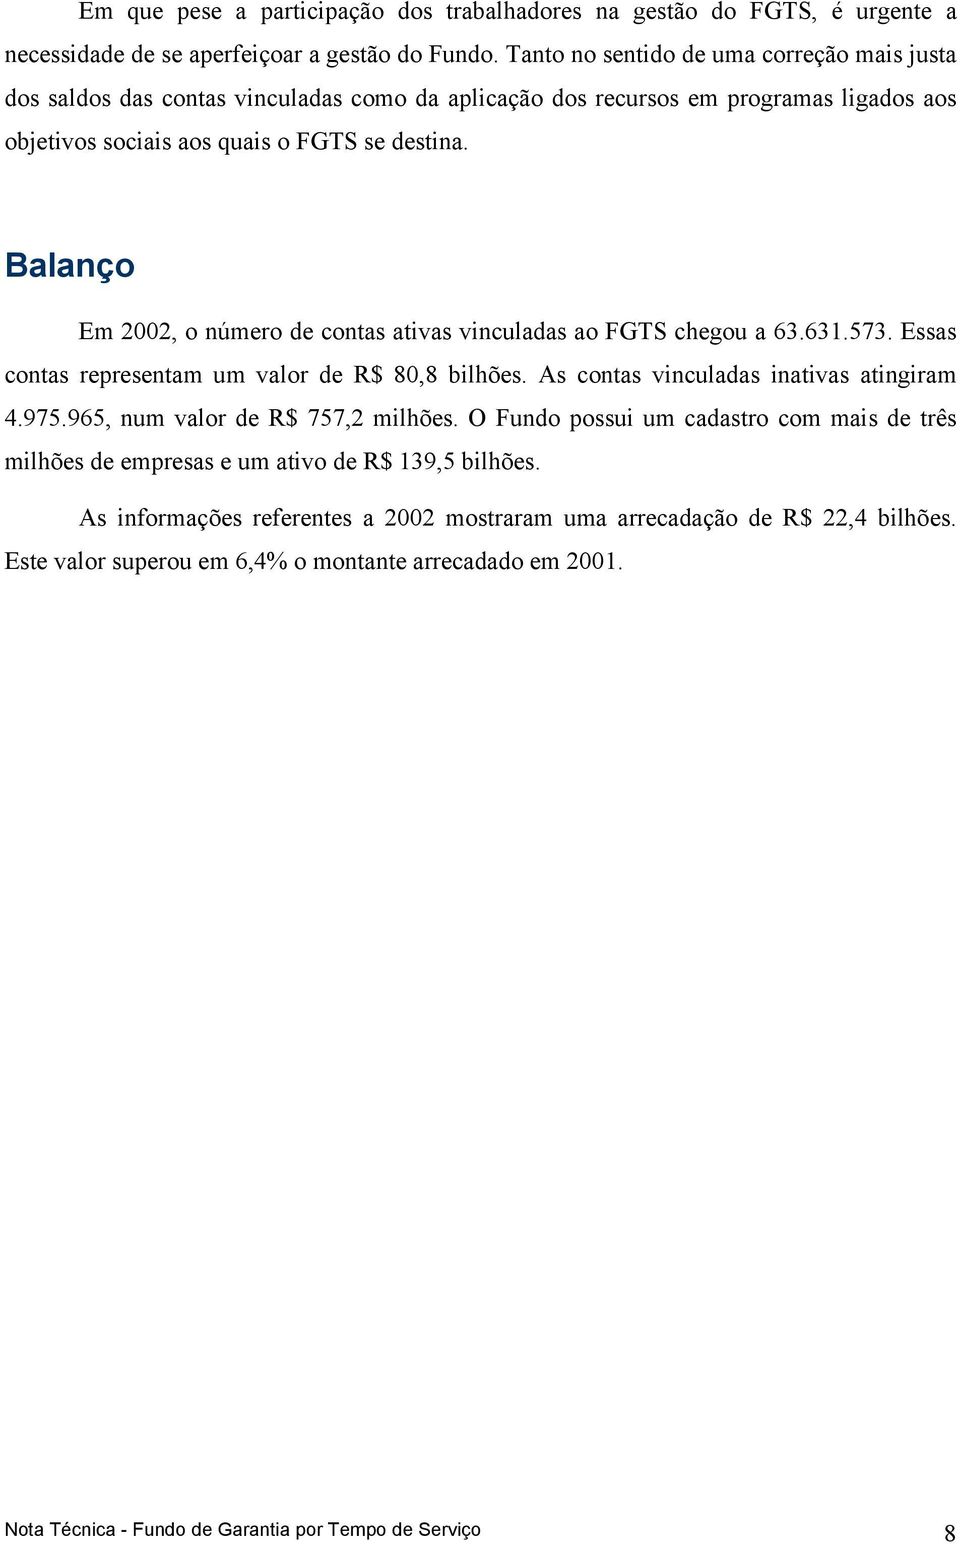 Balanço Em 2002, o número de contas ativas vinculadas ao FGTS chegou a 63.631.573. Essas contas representam um valor de R$ 80,8 bilhões. As contas vinculadas inativas atingiram 4.975.